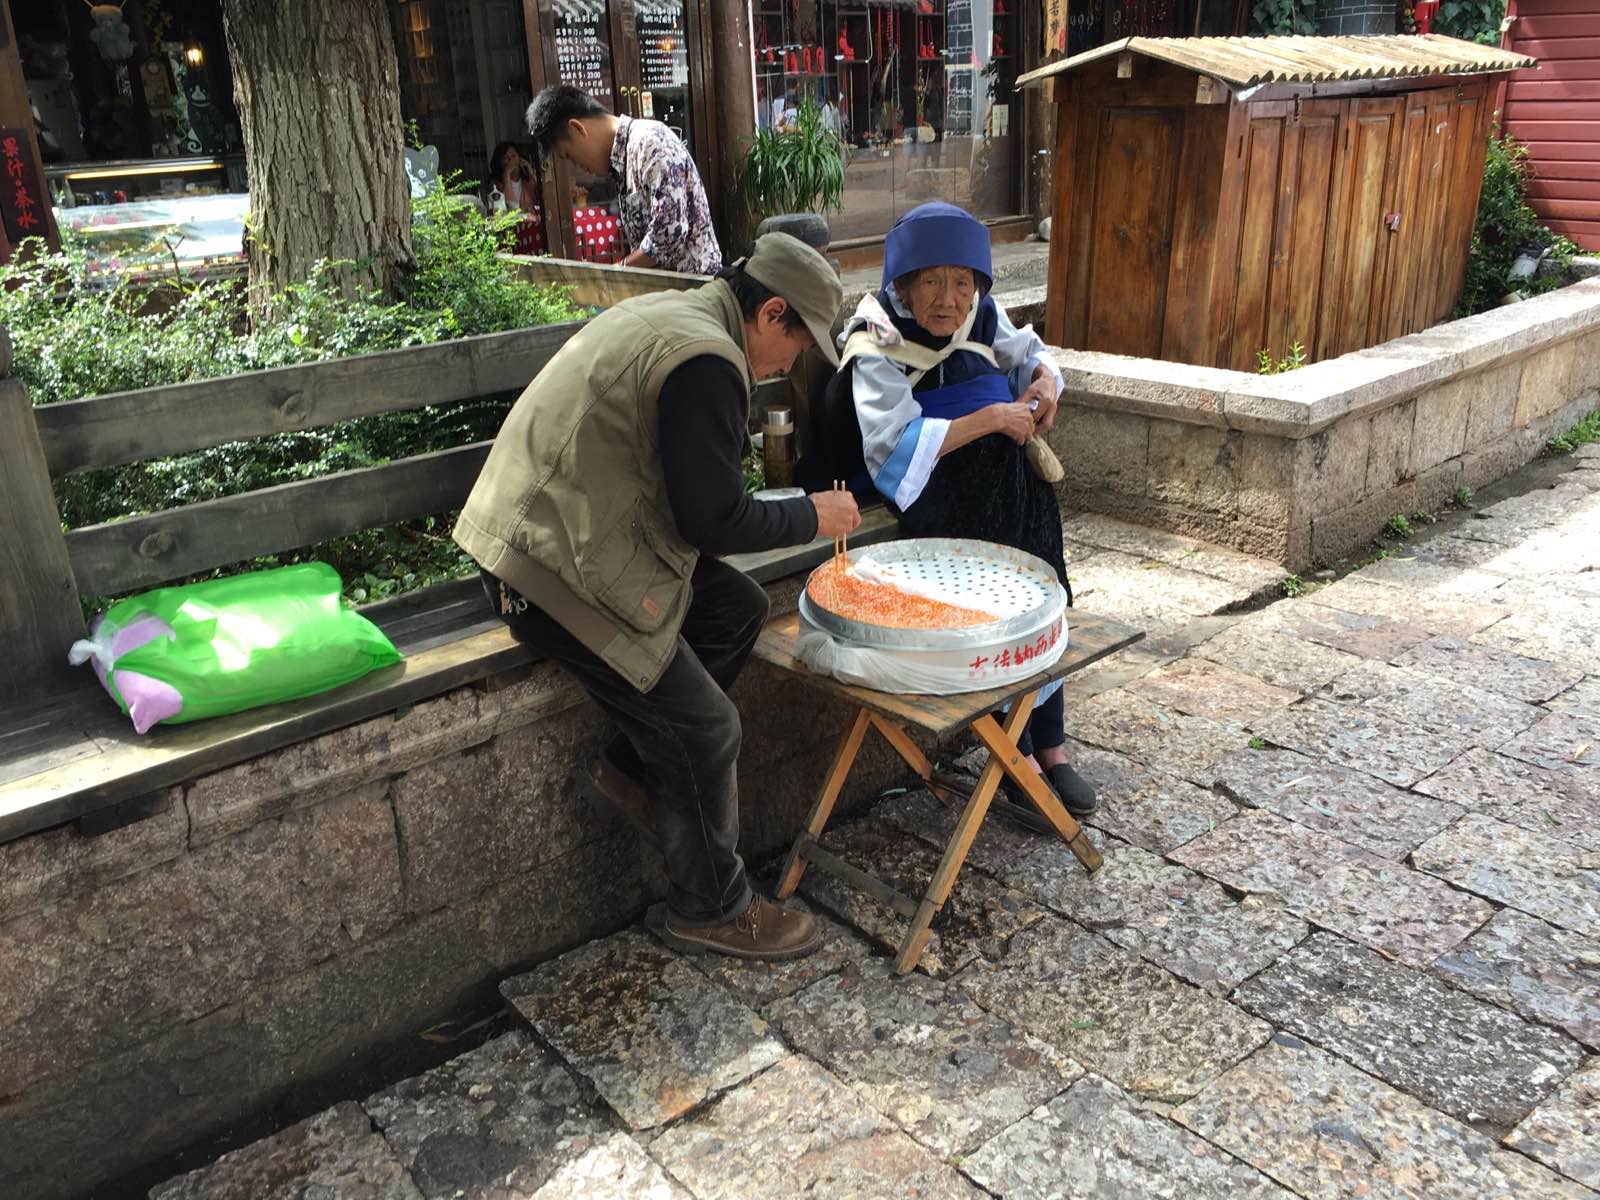 古城有很多卖小吃的小摊/纳西族爷爷奶奶做的西米糕/九十多岁看起来依然很